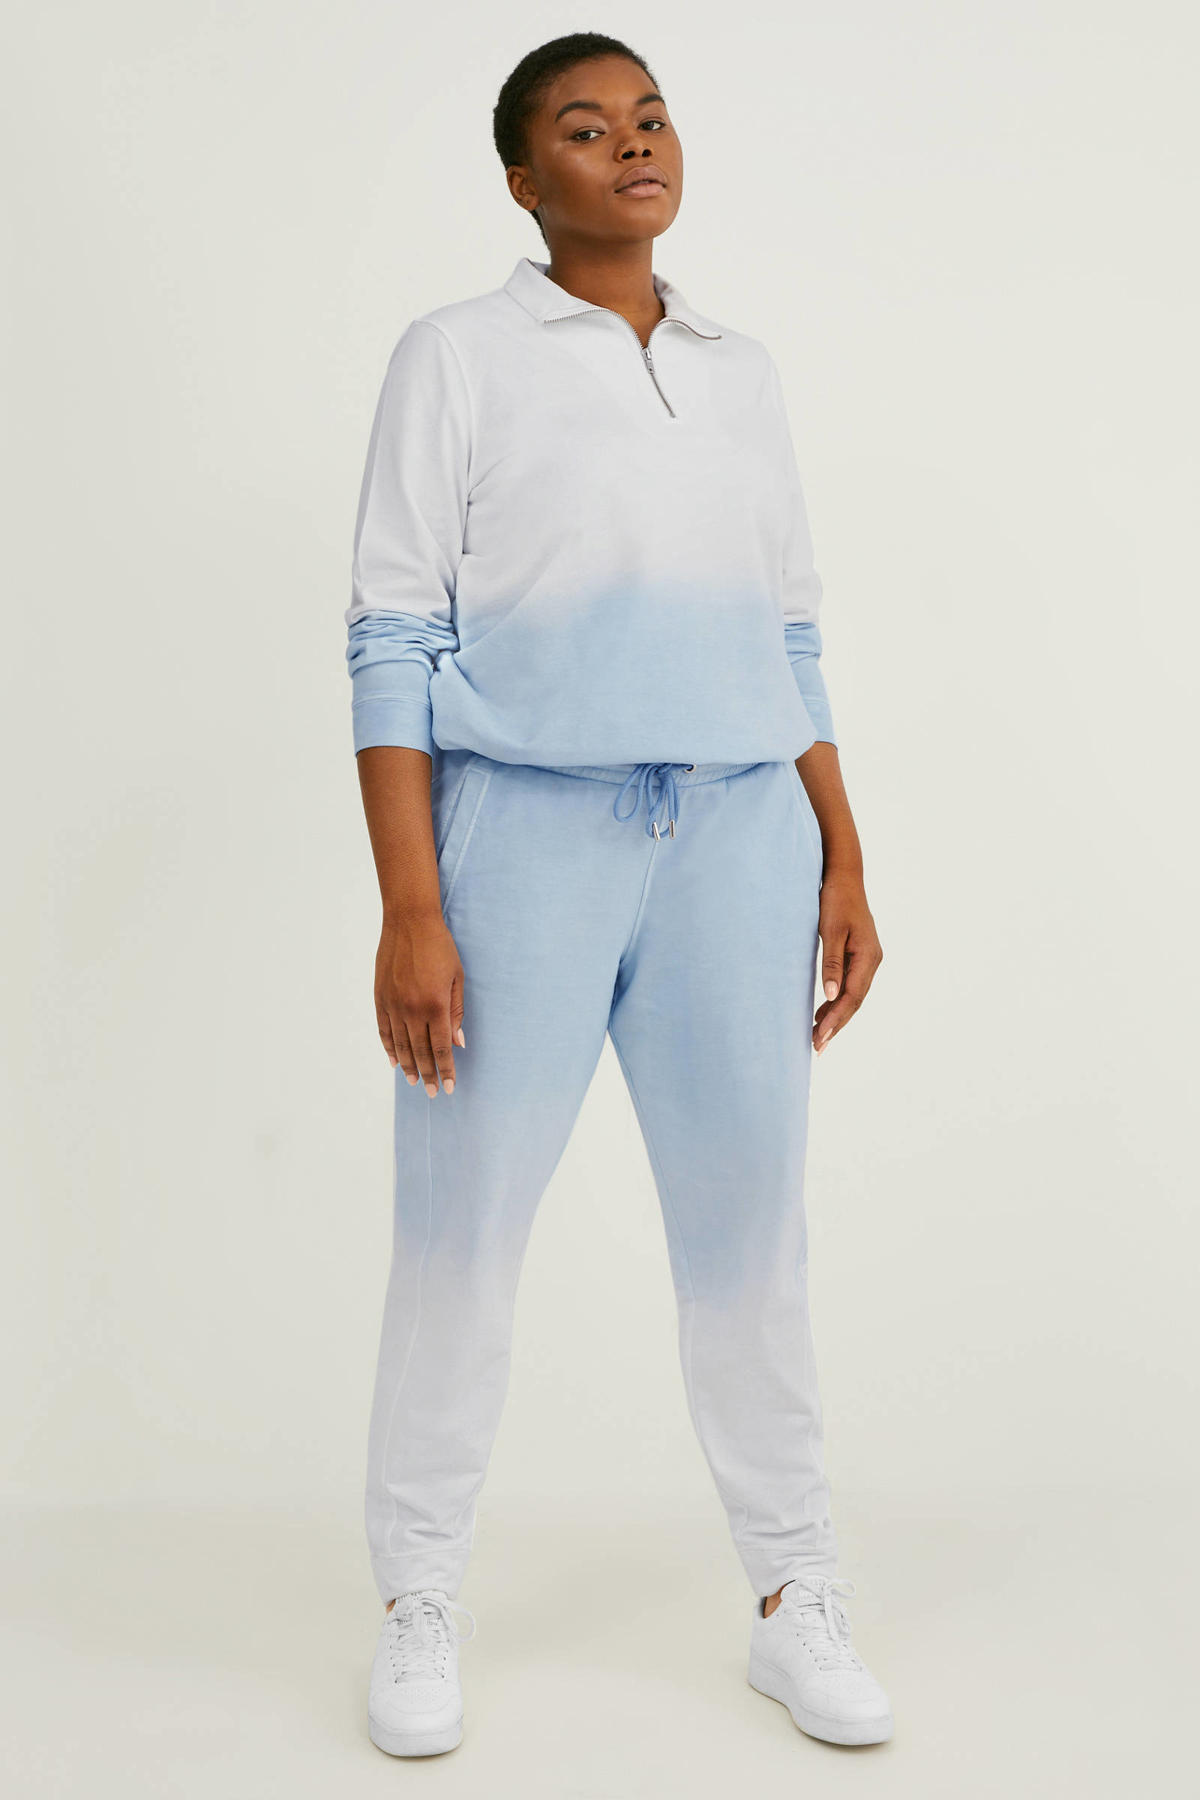 Verfrissend tactiek Ongrijpbaar C&A XL dip-dyeregular fit Disney sweatpants lichtblauw/wit | wehkamp